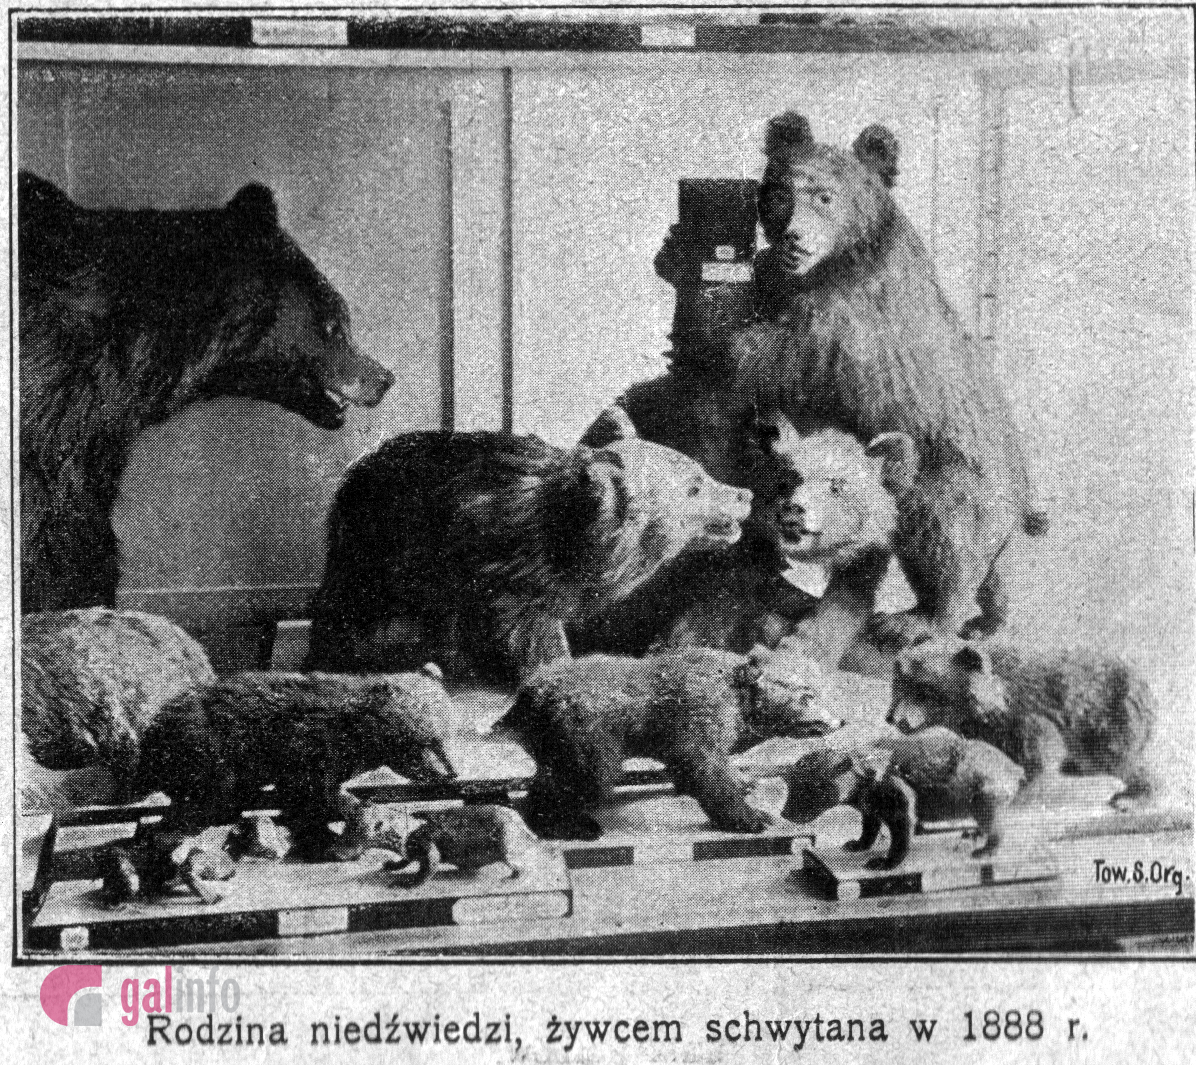 Фото надані Гал-інфо з архіву Державного природознавчого музею Національної академії наук України.